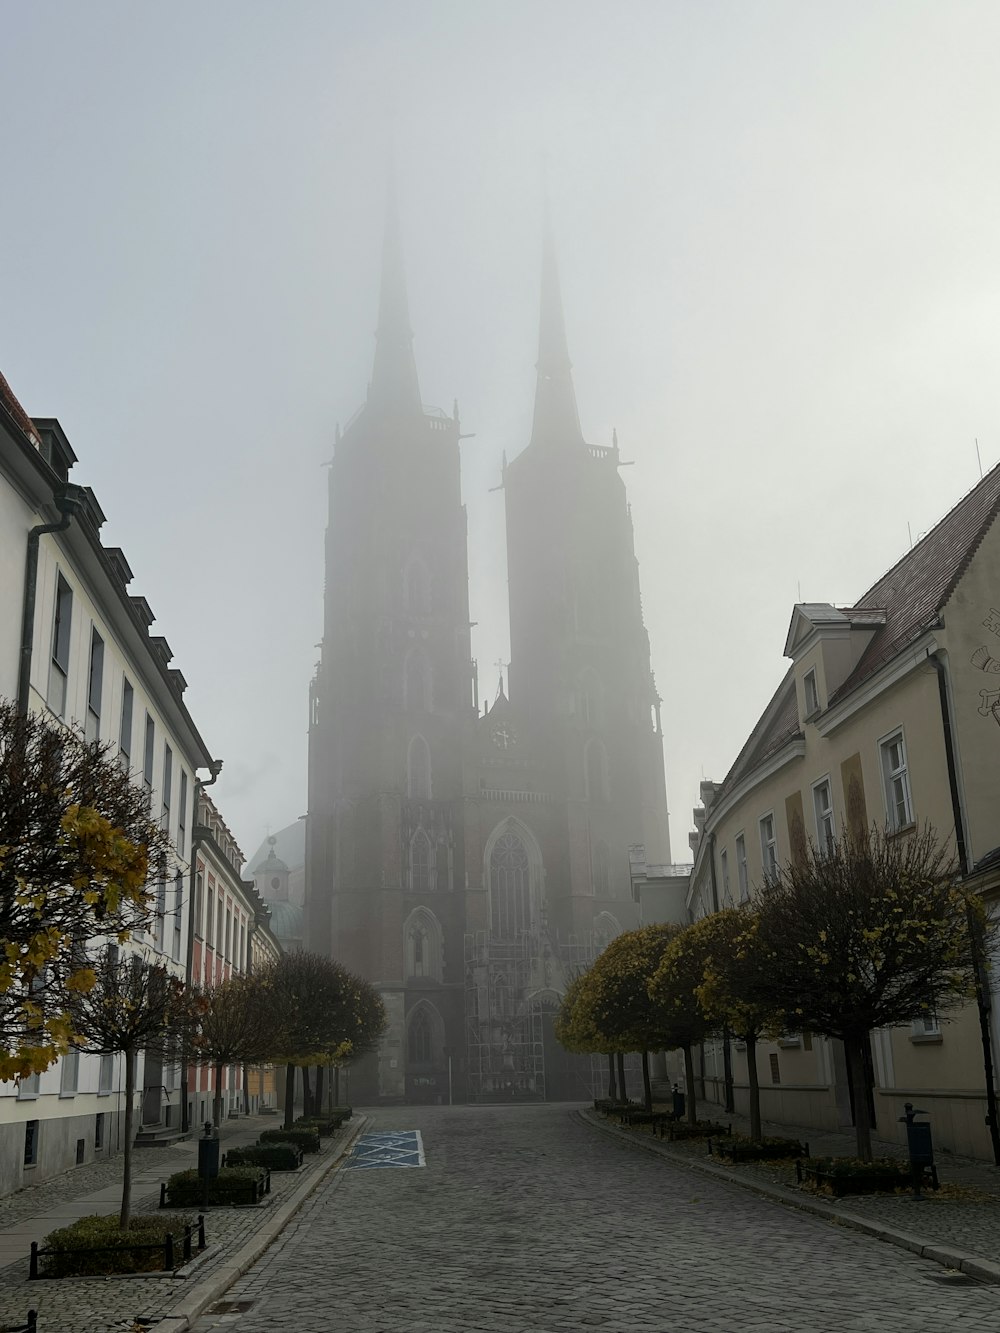 Una grande cattedrale che domina una città in una giornata nebbiosa